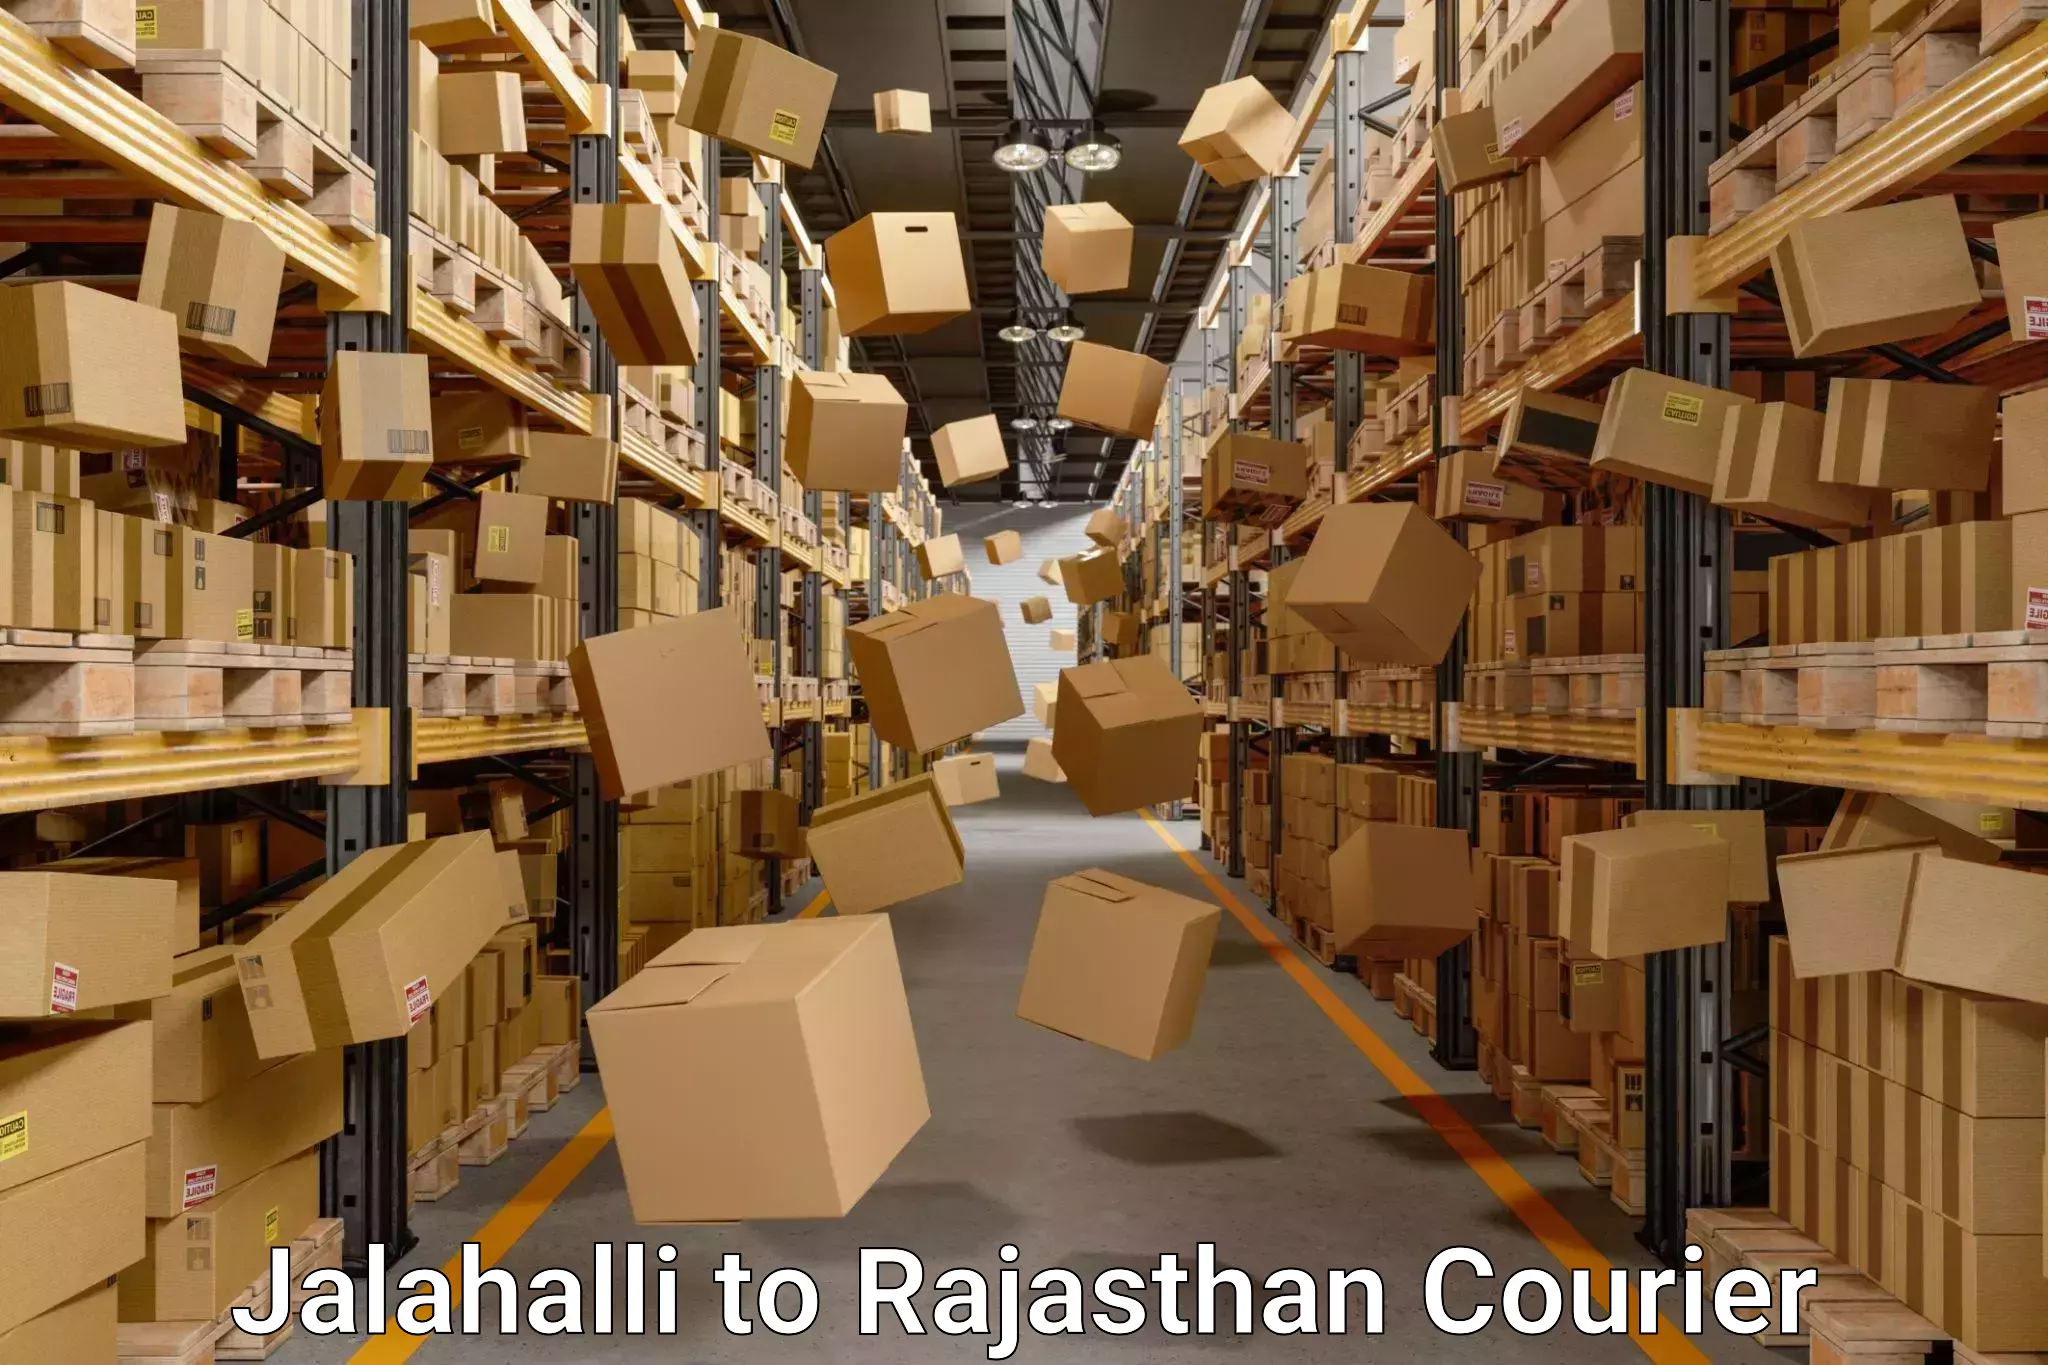 Moving and packing experts Jalahalli to Sri Vijaynagar